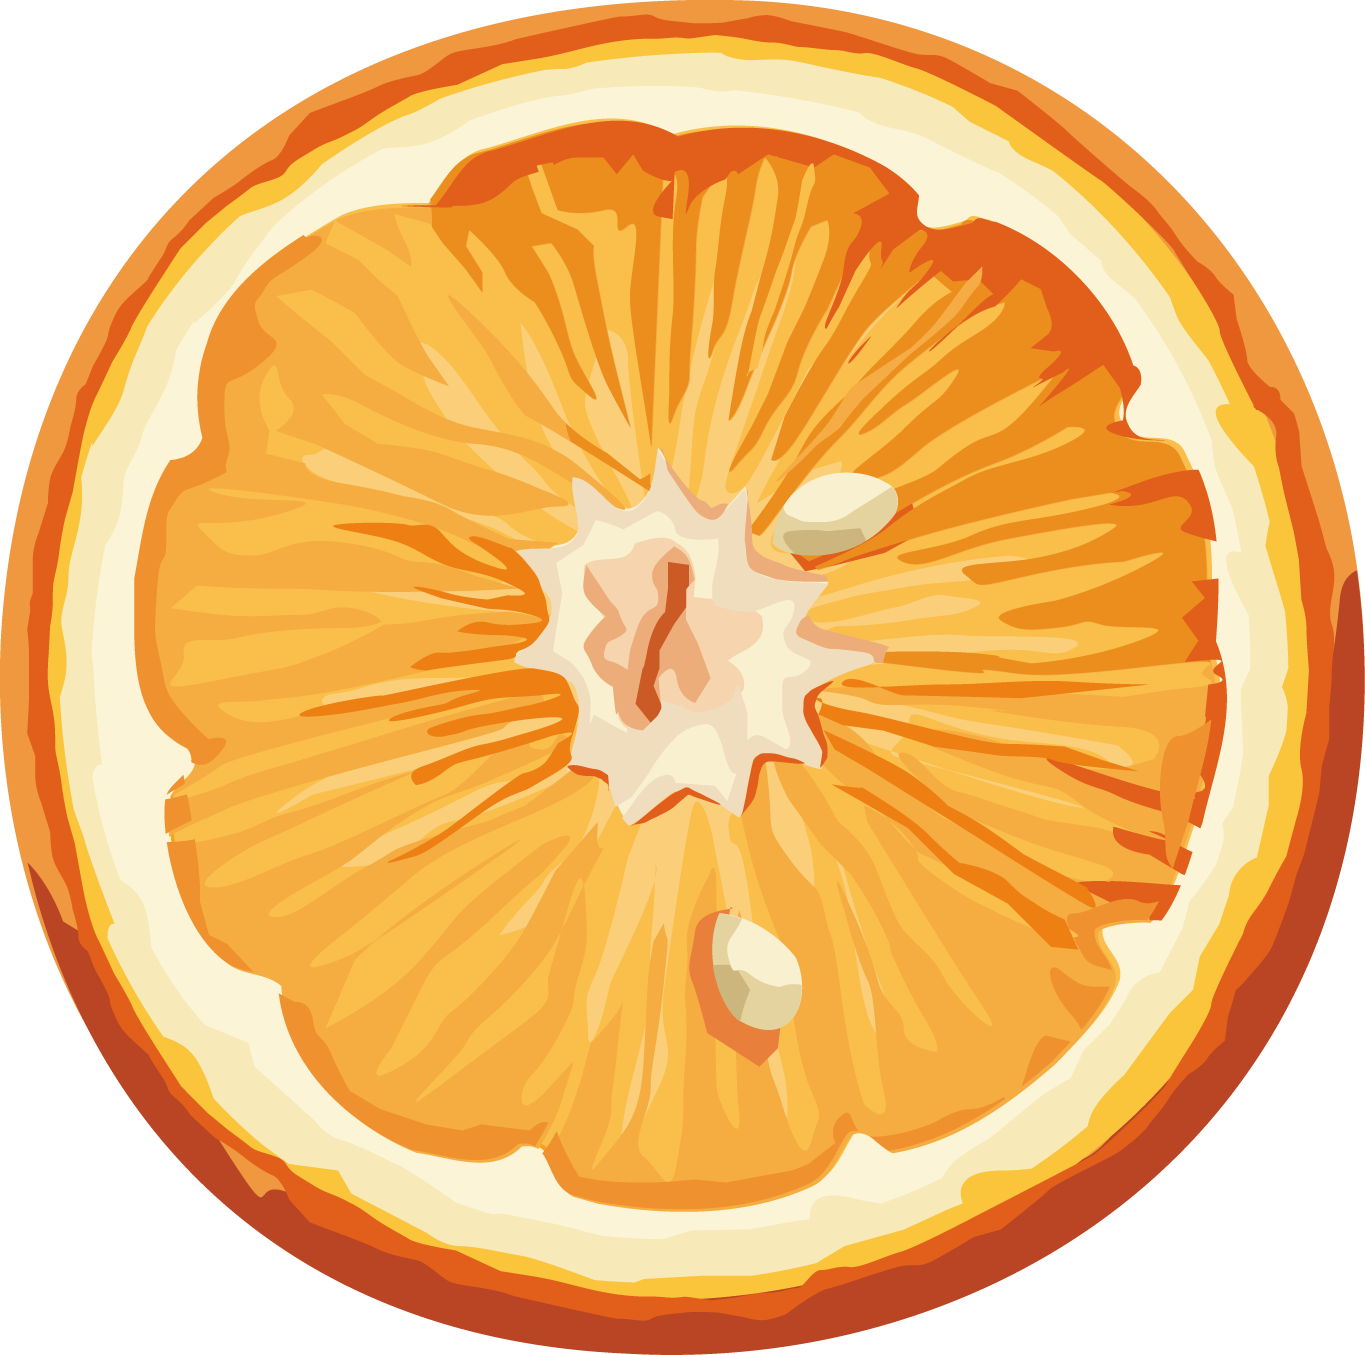 Orange PNG image, free download